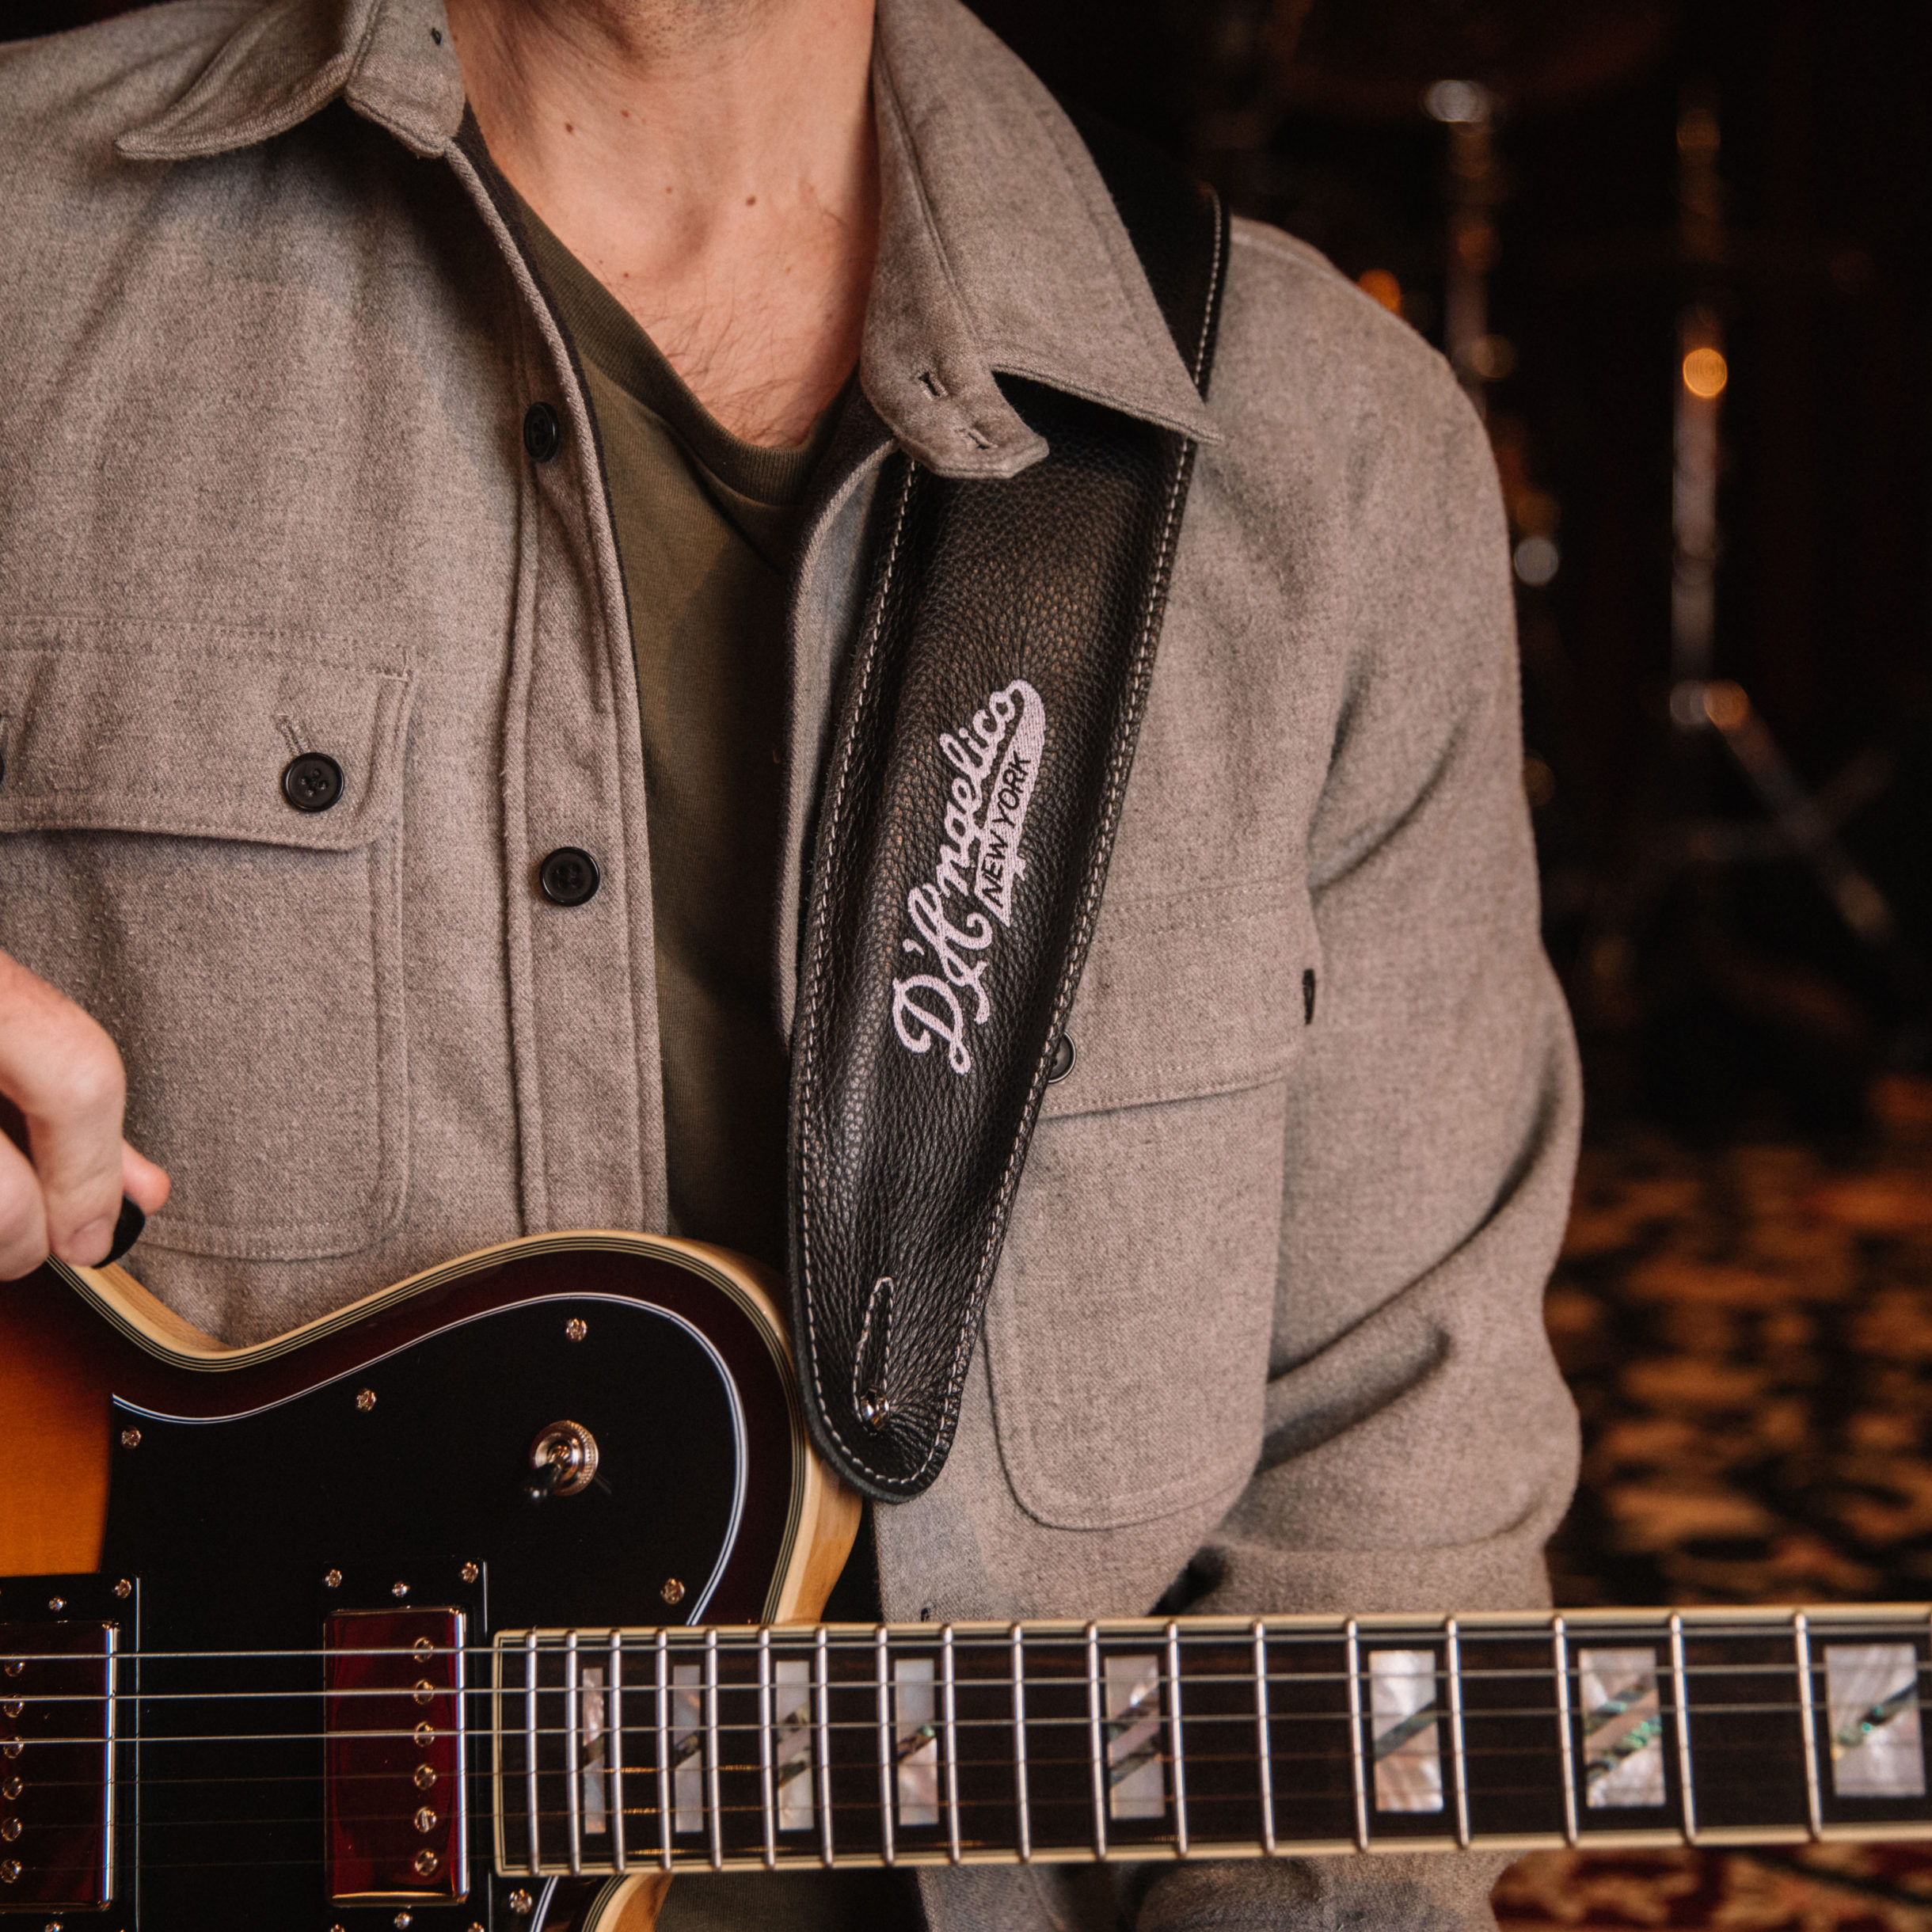 Premium Leather Guitar Strap, Brown – Heritage Guitars